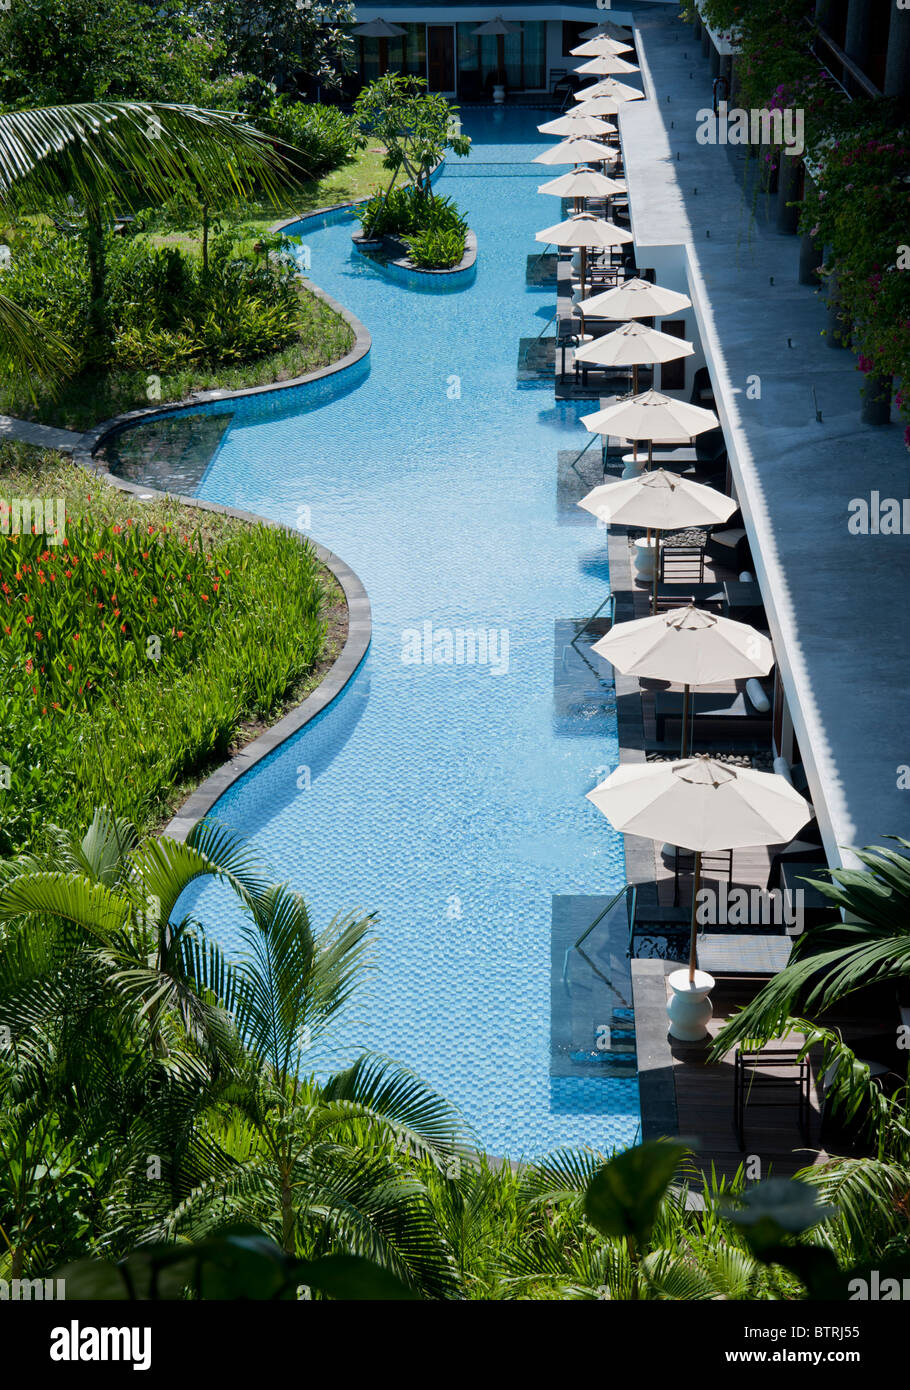 Luftbild von der Lagune Zimmer auf dem Gelände des Melia Bali Hotel Nusa Dua Bali Indonesien Stockfoto